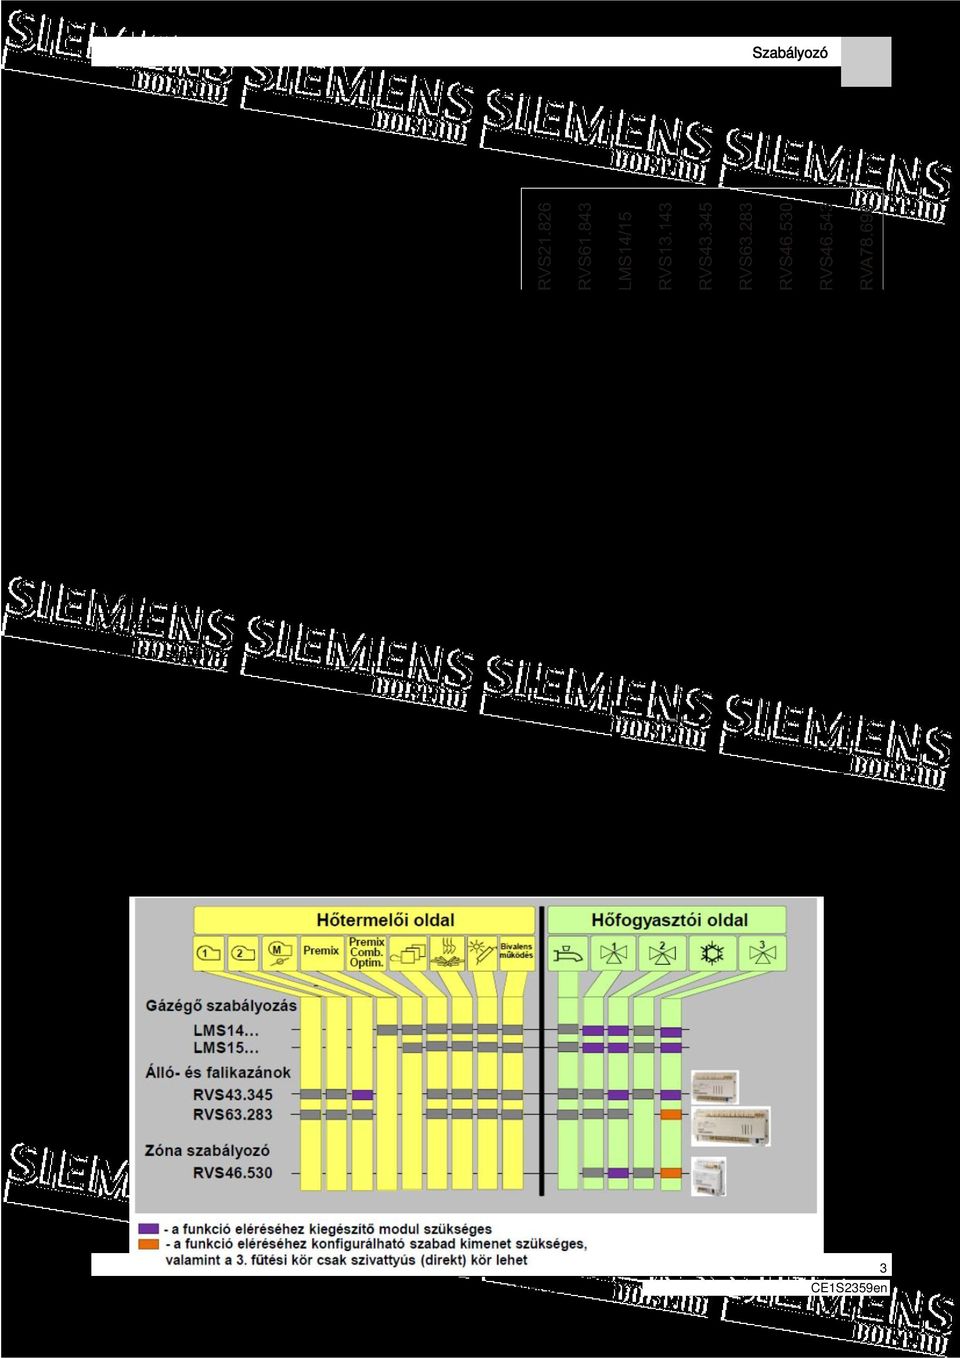 Modulációs szolár szivattyú Szilárdtüzelésű kazán Kaszkád Fűtési kör szabályozás Hűtési kör szabályozás HMV szabályozás Átfolyós HMV